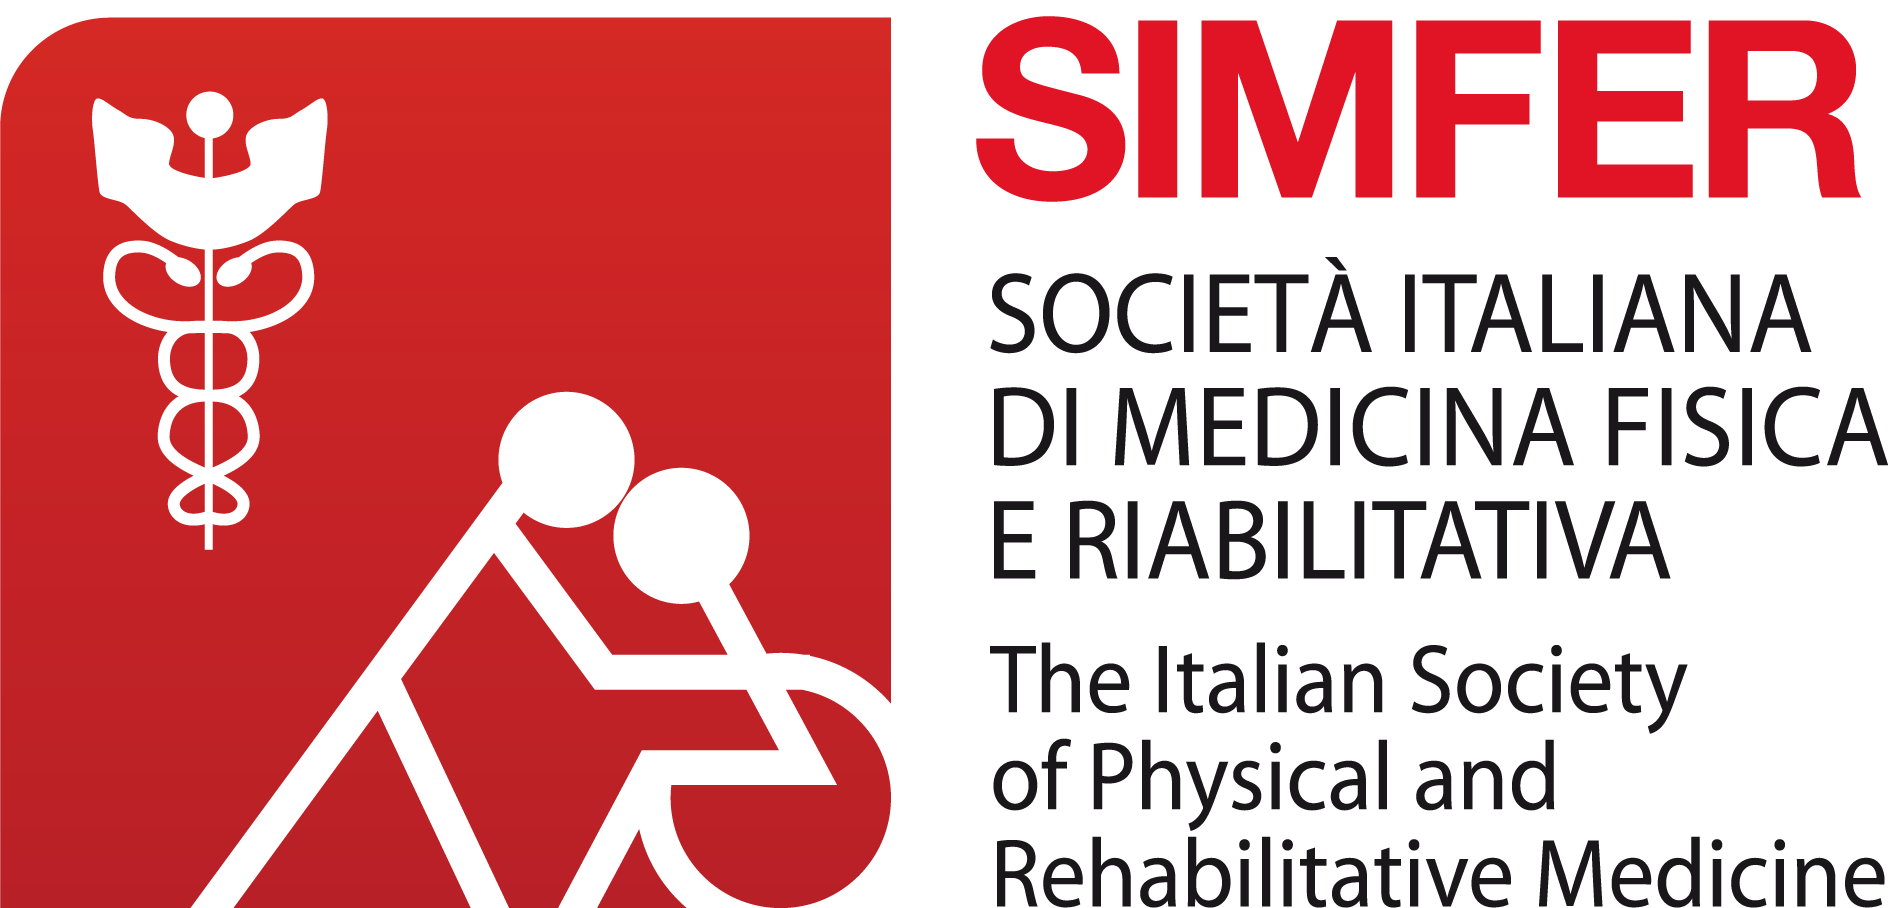 SIMFER – Società Italiana di Medicina Fisica e Riabilitativa